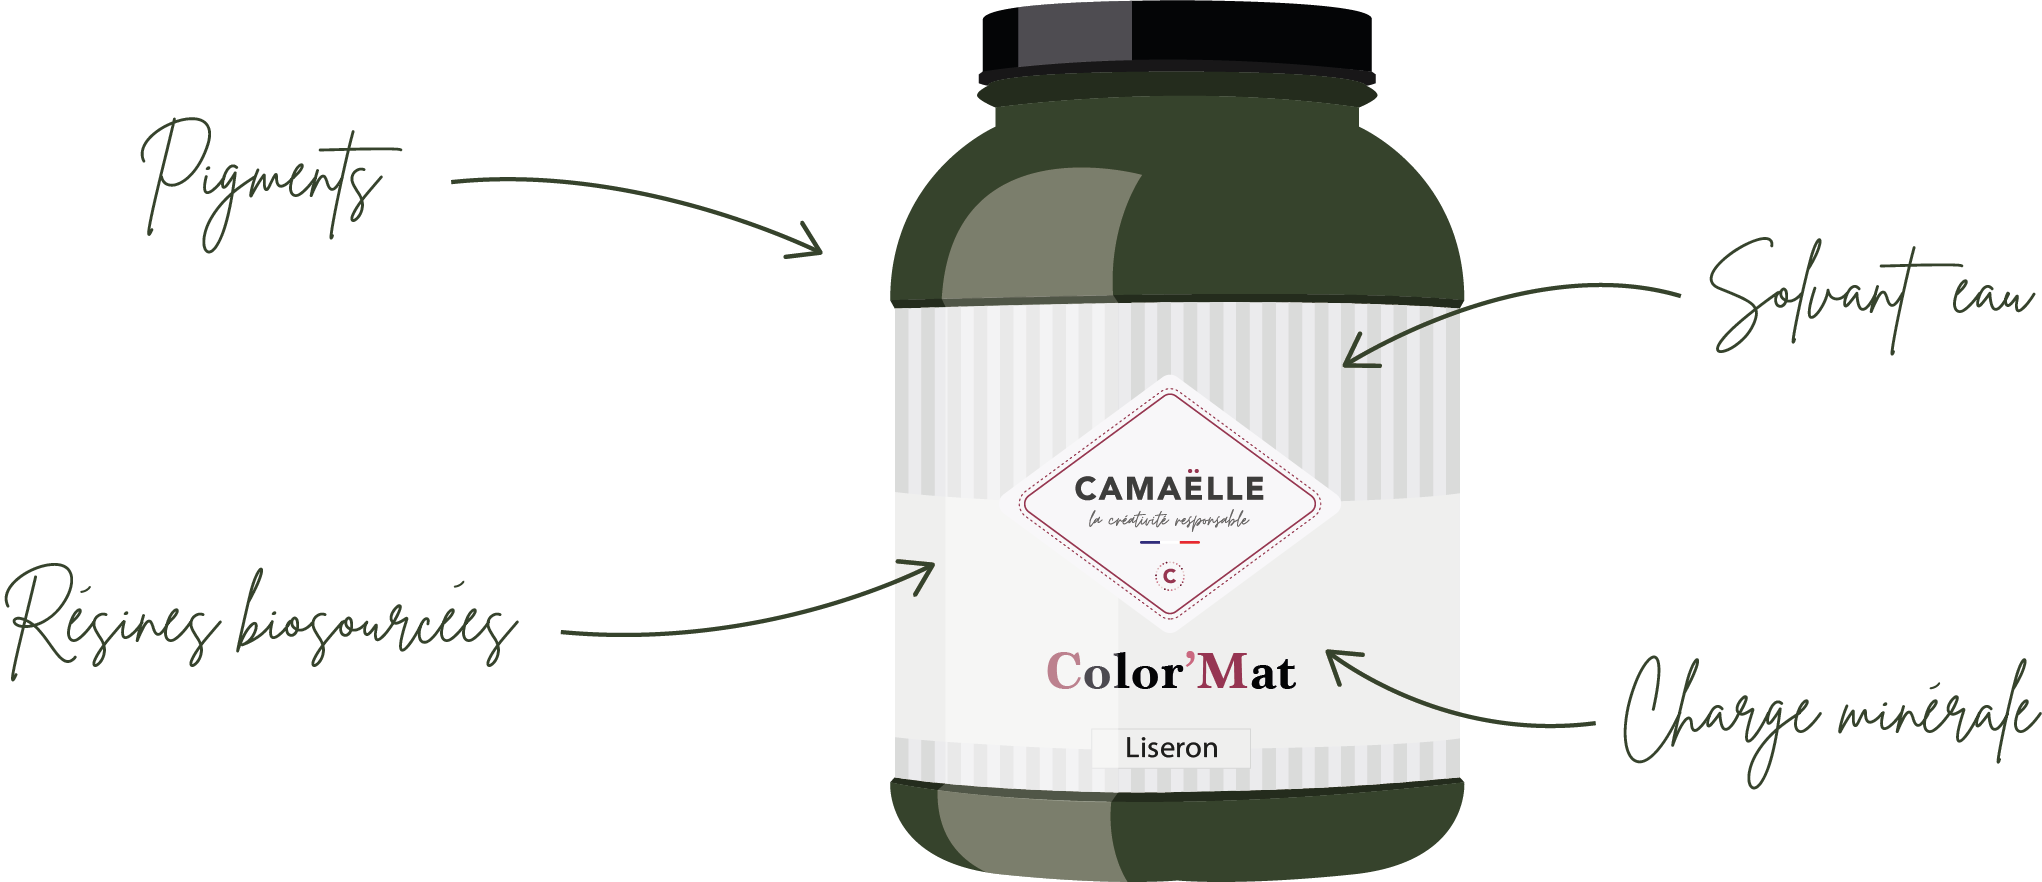 Pot de peinture Camaëlle Color'Mat avec des étiquettes indiquant pigments, résines biosourcées, solvant eau, et charge minérale.